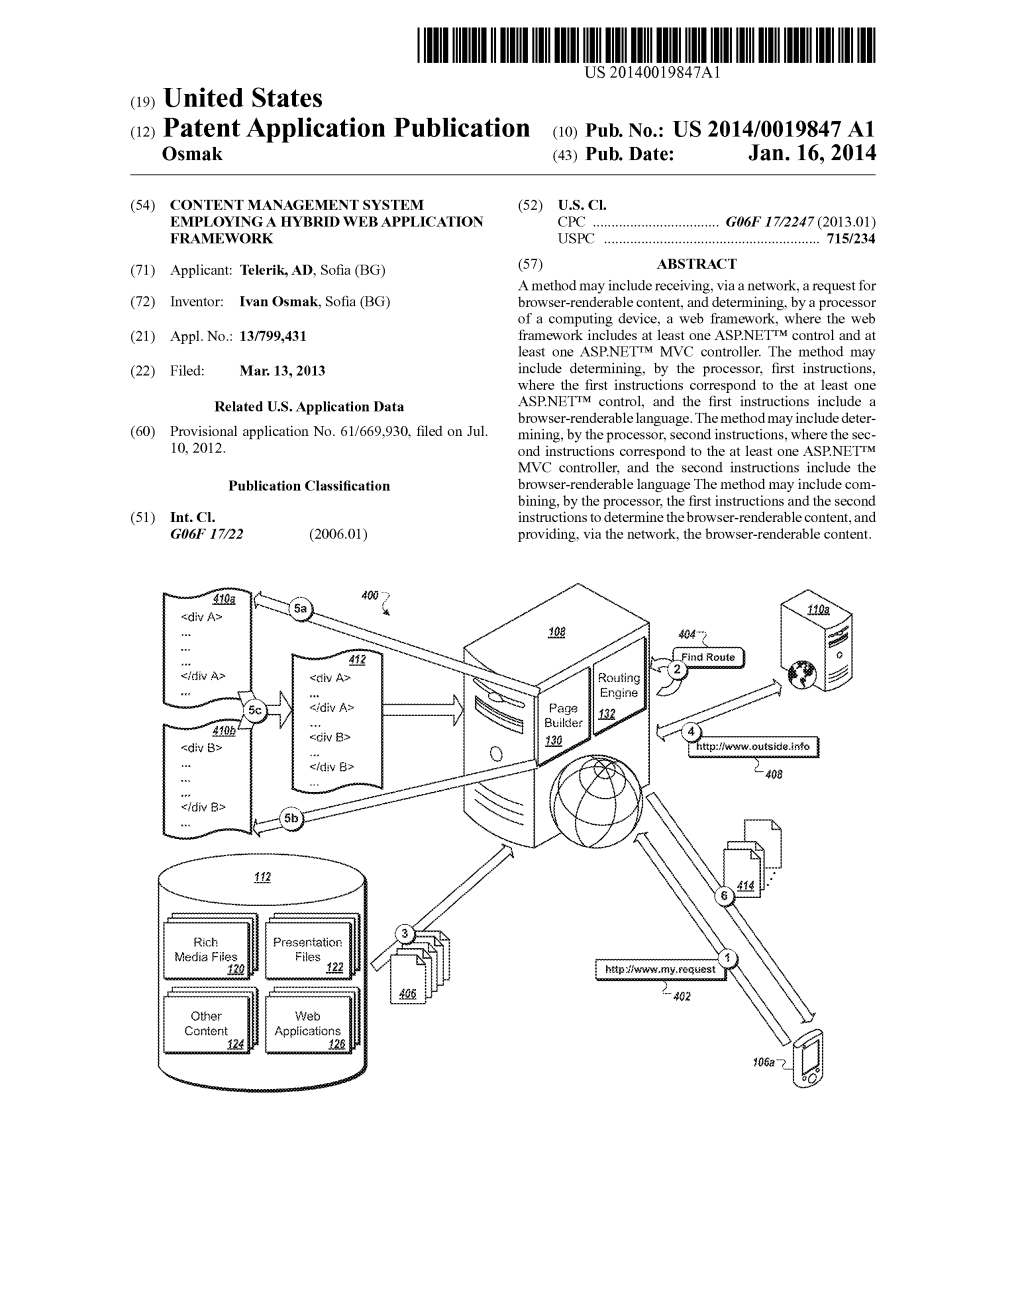 (12) Patent Application Publication (10) Pub. No.: US 2014/0019847 A1 Osmak (43) Pub